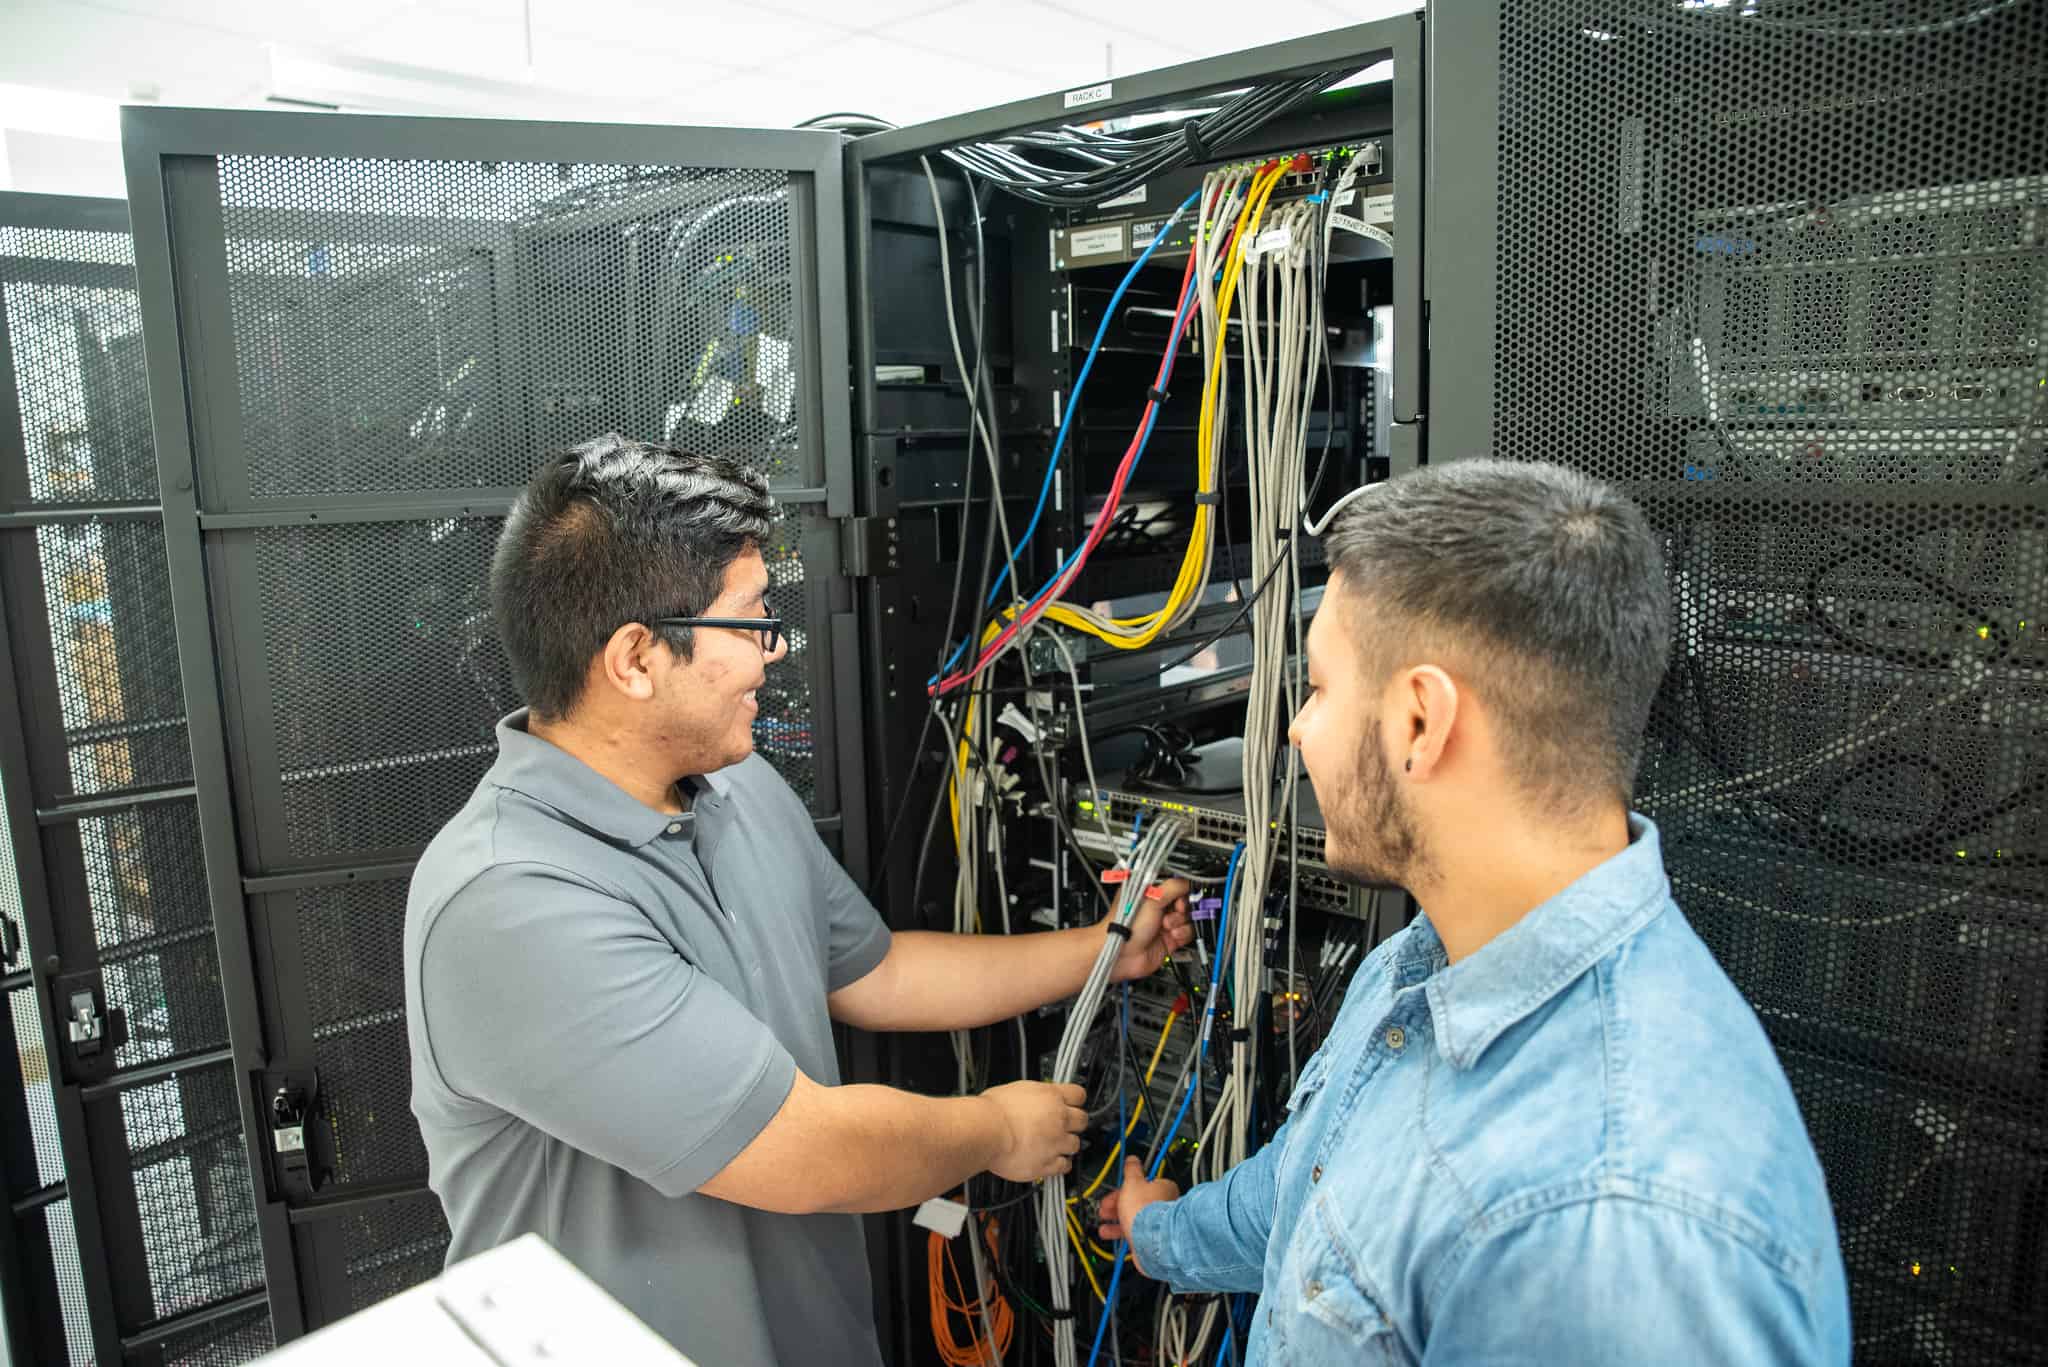 Dos estudiantes varones de P-TECH trabajando con cables de red durante sus prácticas en IBM.